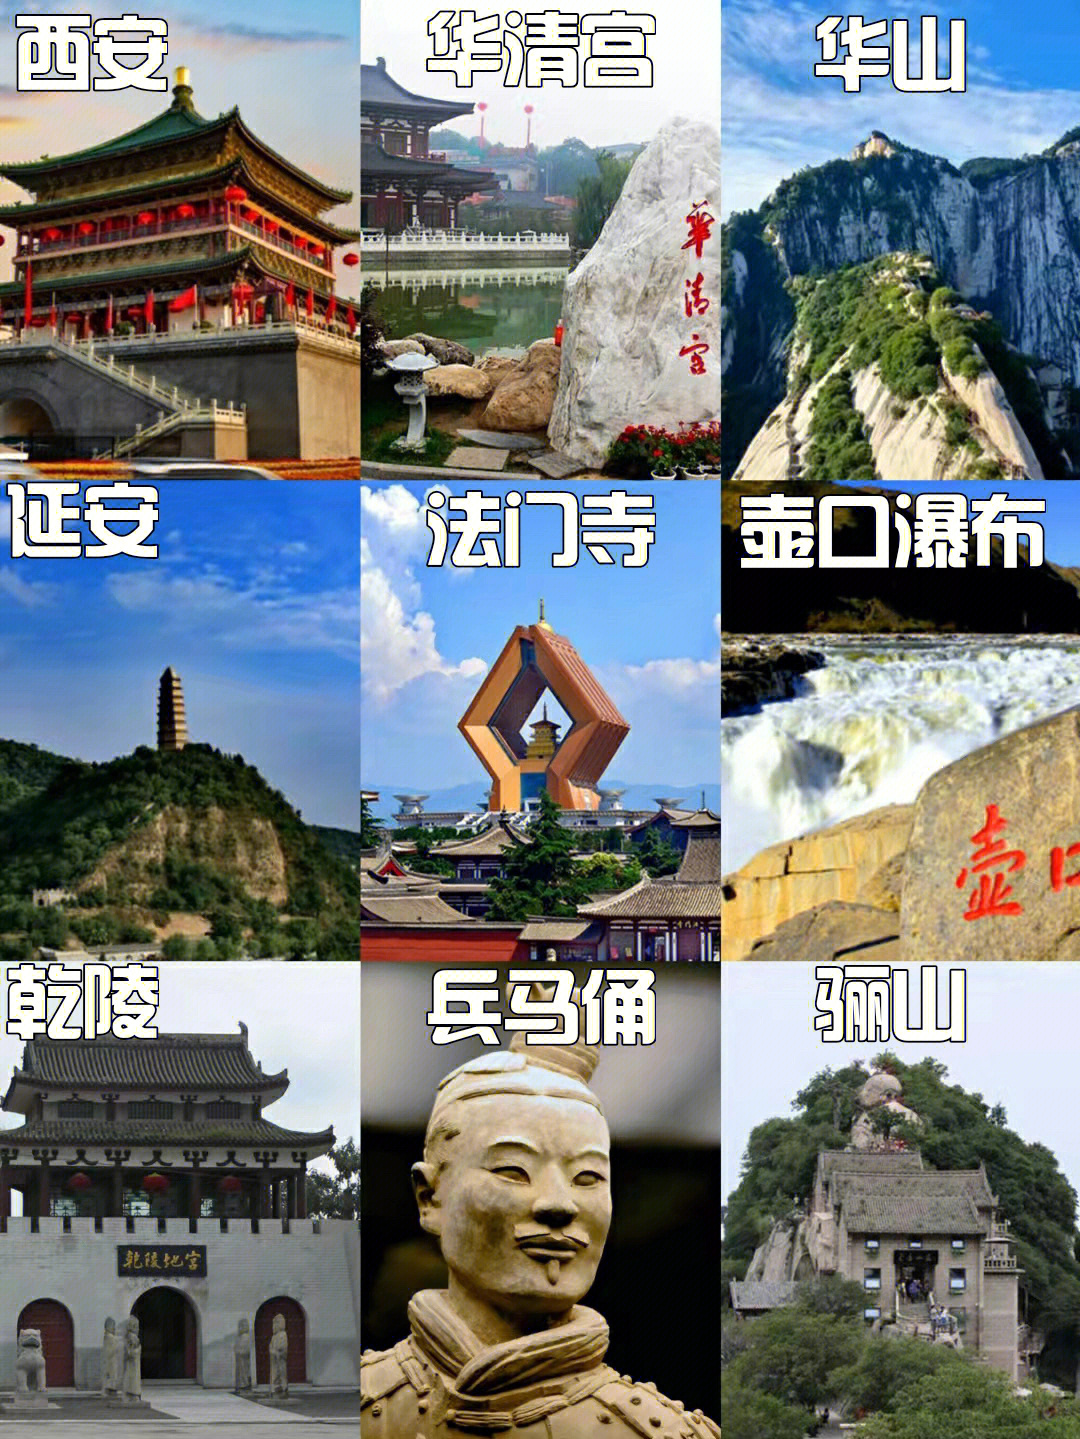 西安旅游景点排名推荐图片